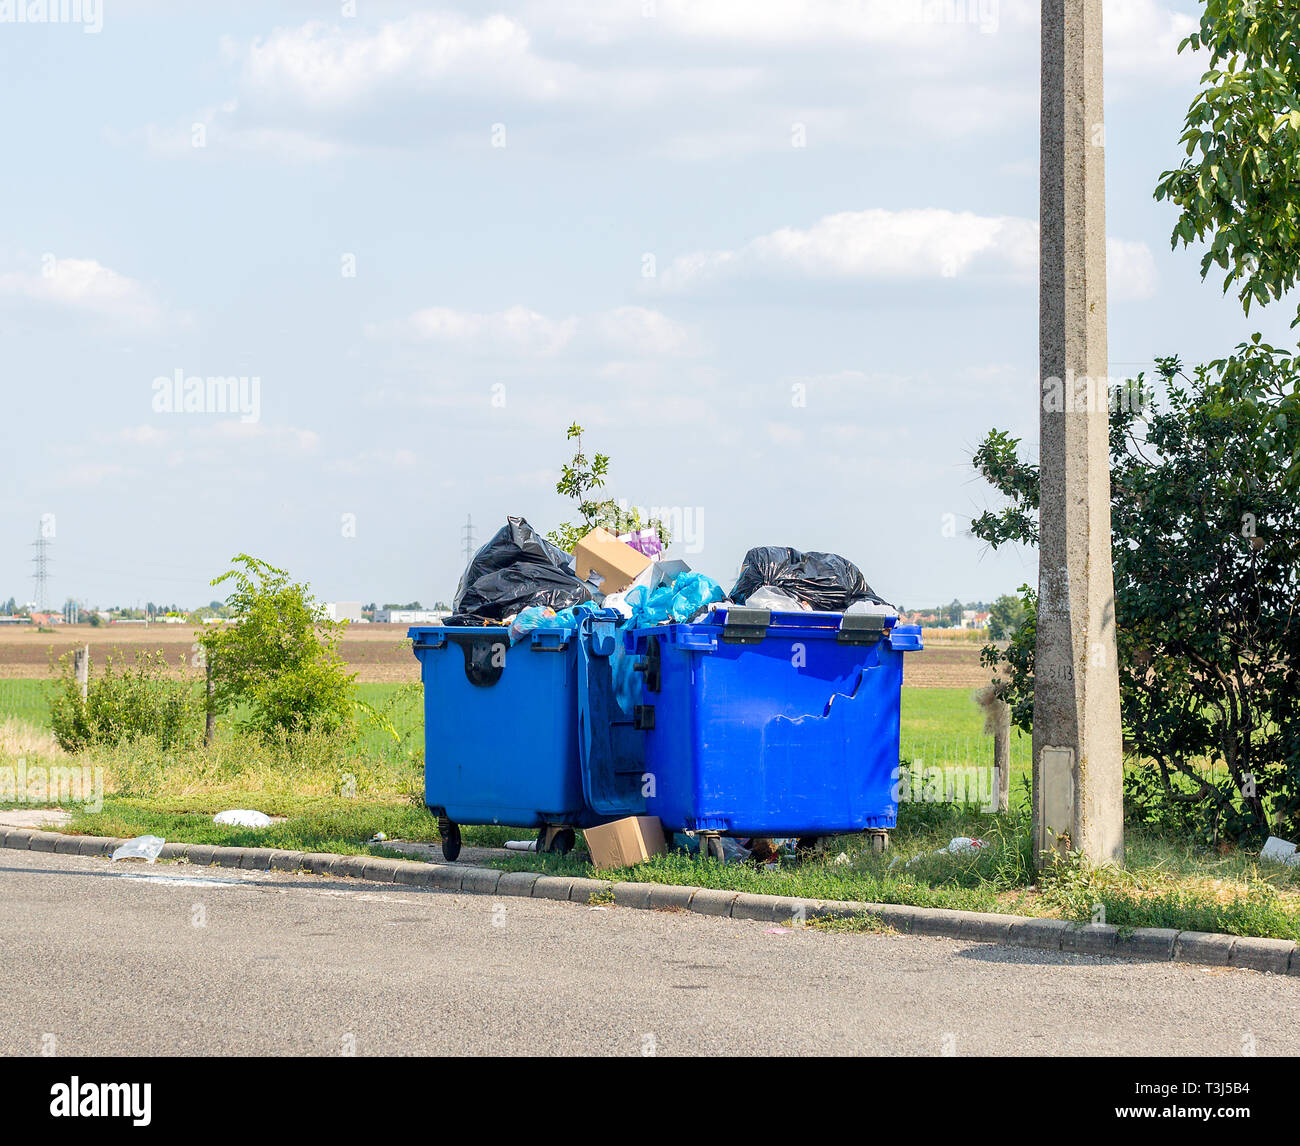 Überlaufen, blauen Kunststoff Abfallbehälter mit schwarzen Müllsäcken, Kartons und anderen Müll außerhalb der Stadt in der Nähe der Straße. Ein Abfall ist gebrochen Stockfoto